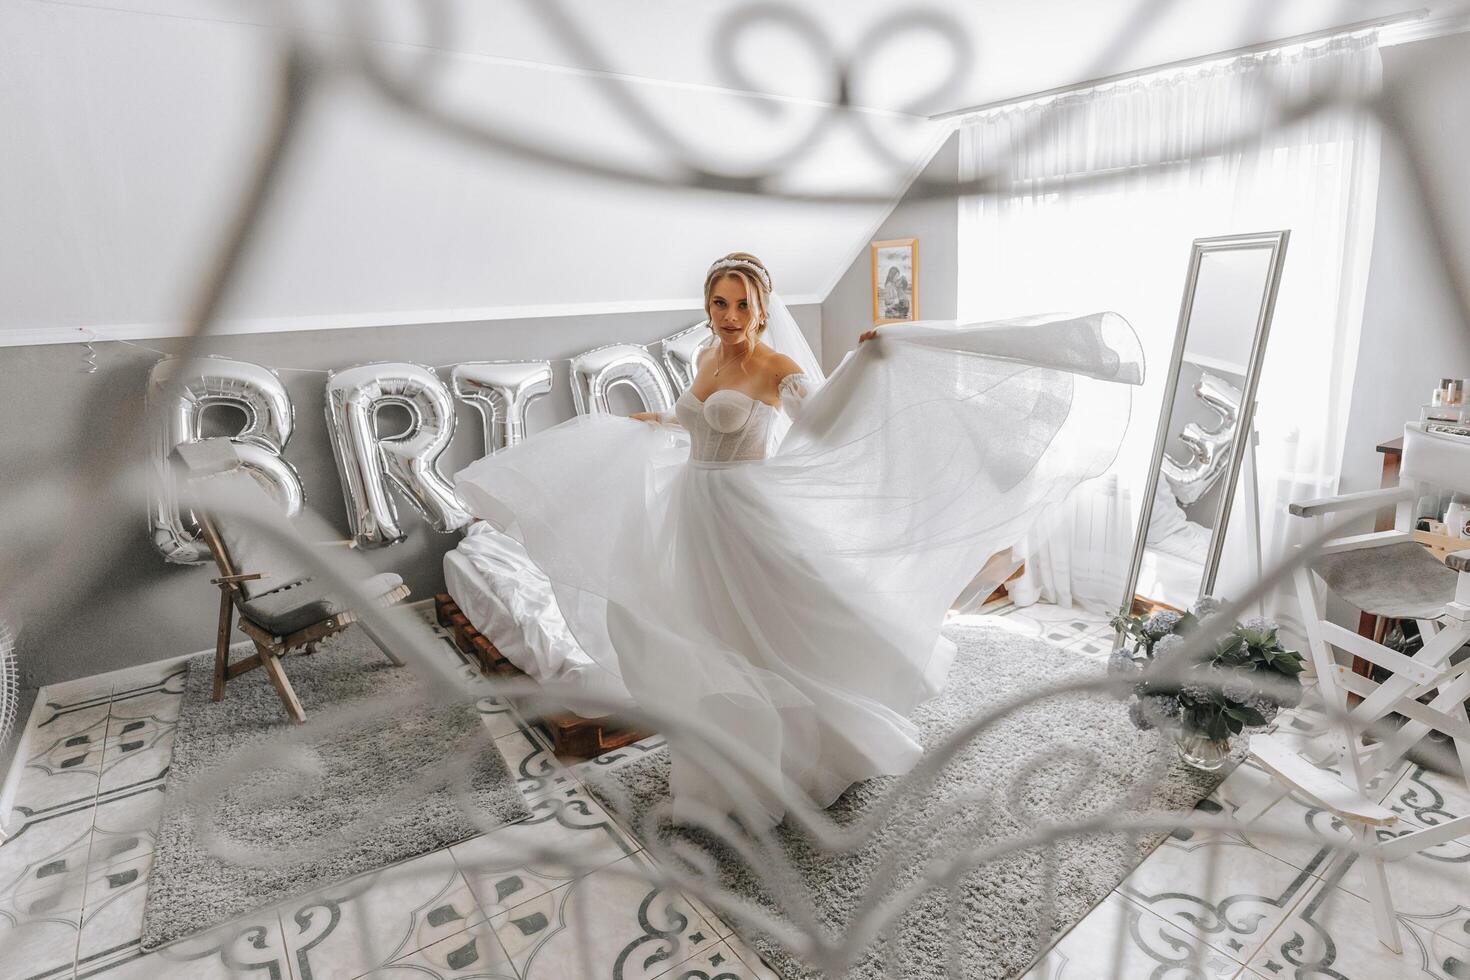 mooi gekruld bruin haar bruid in een wit jurk poses voor een fotograaf, cirkelen de kamer in een mooi jurk met mouwen. bruiloft fotografie, detailopname portret, chique kapsel. foto